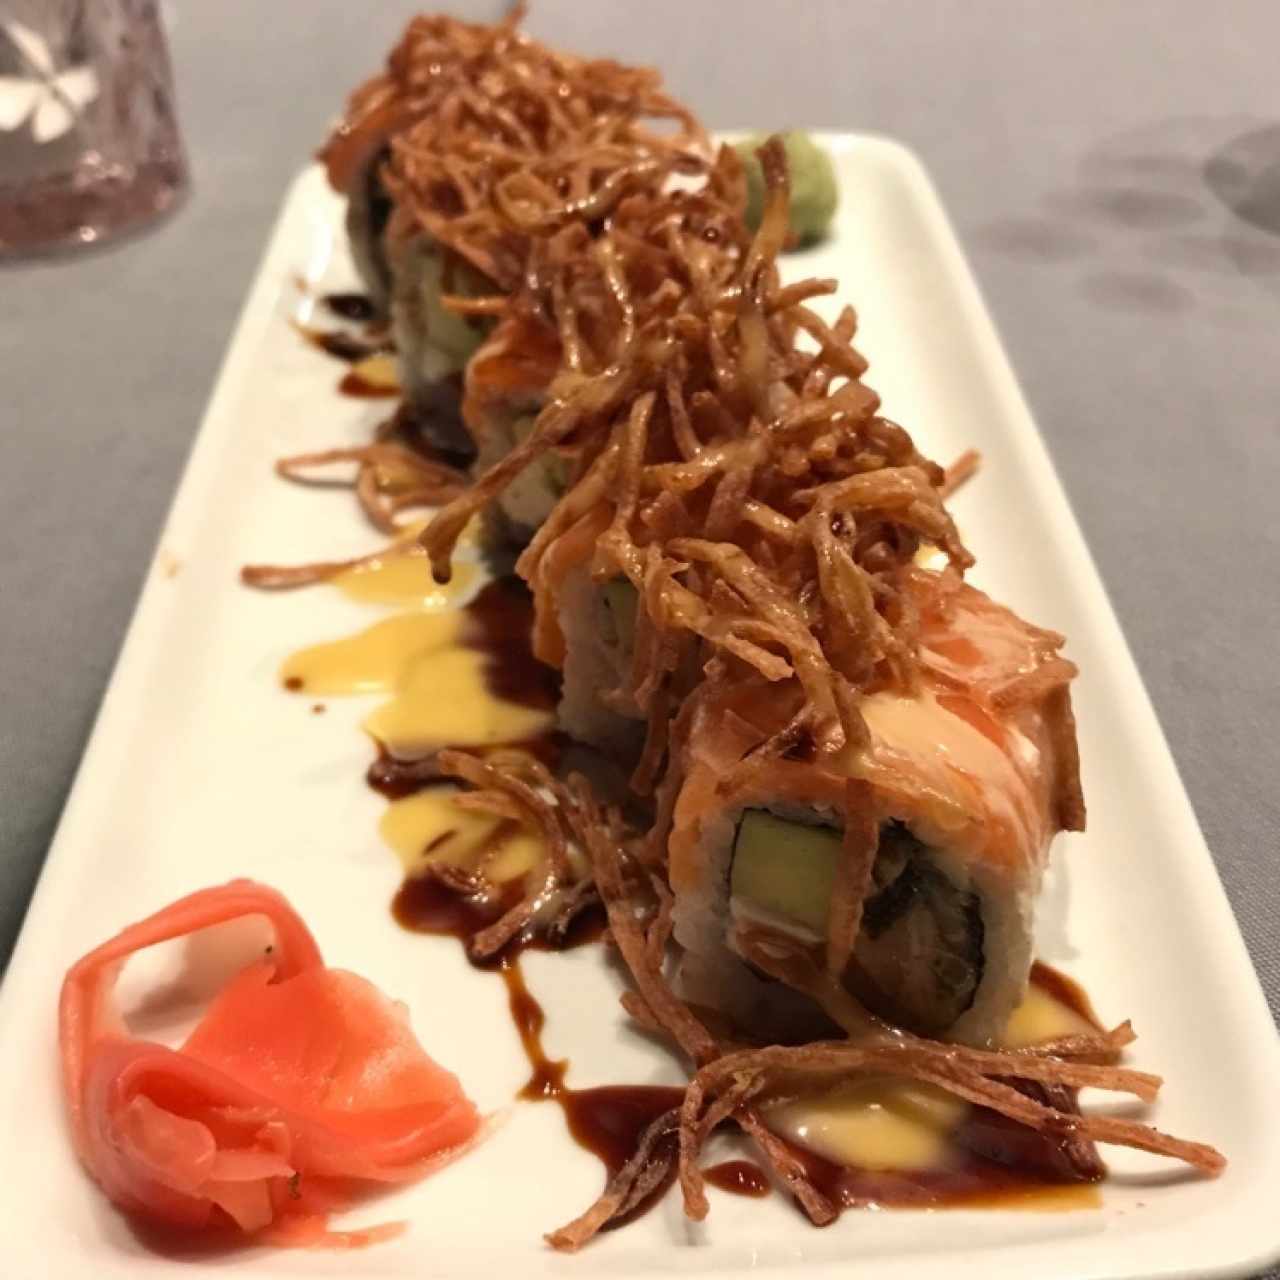 Sushi rolls/Makis - Yoko maki